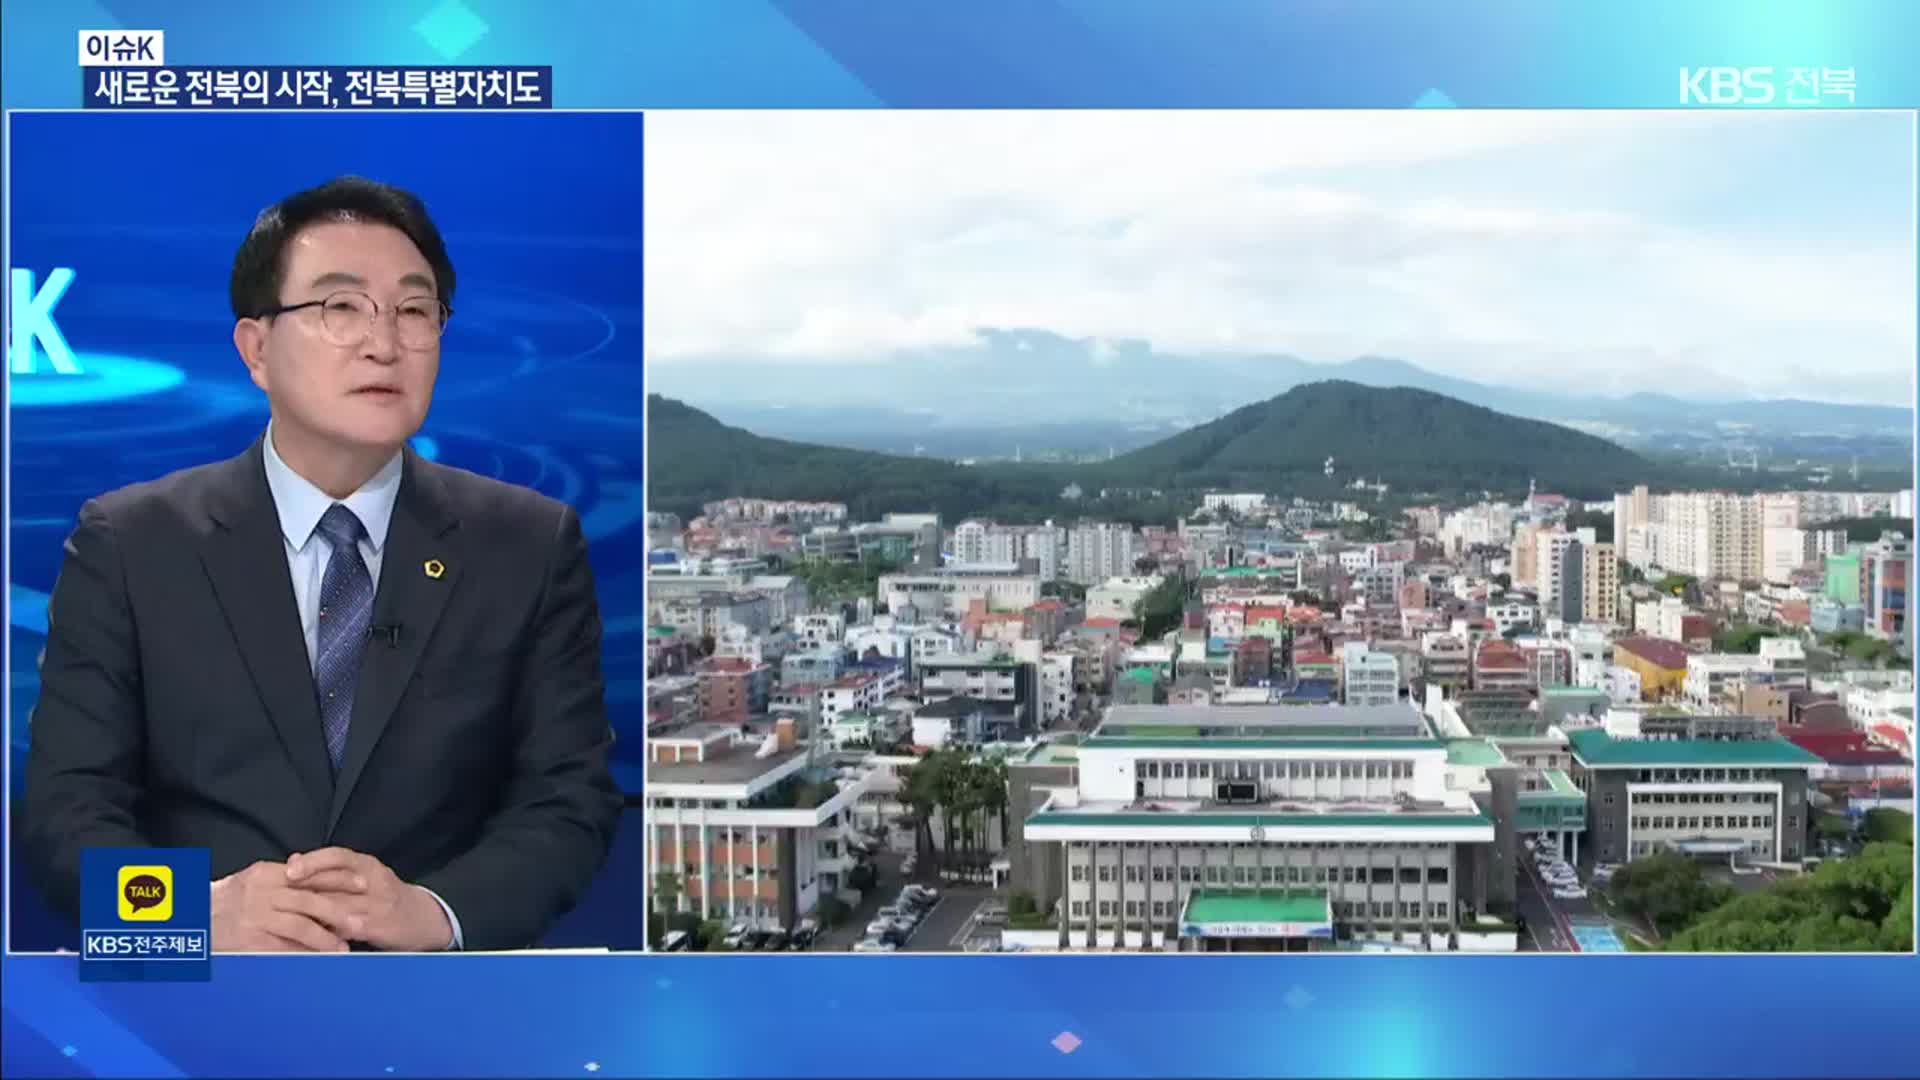 [이슈K] 전북특별자치도 출범…기대와 과제는?